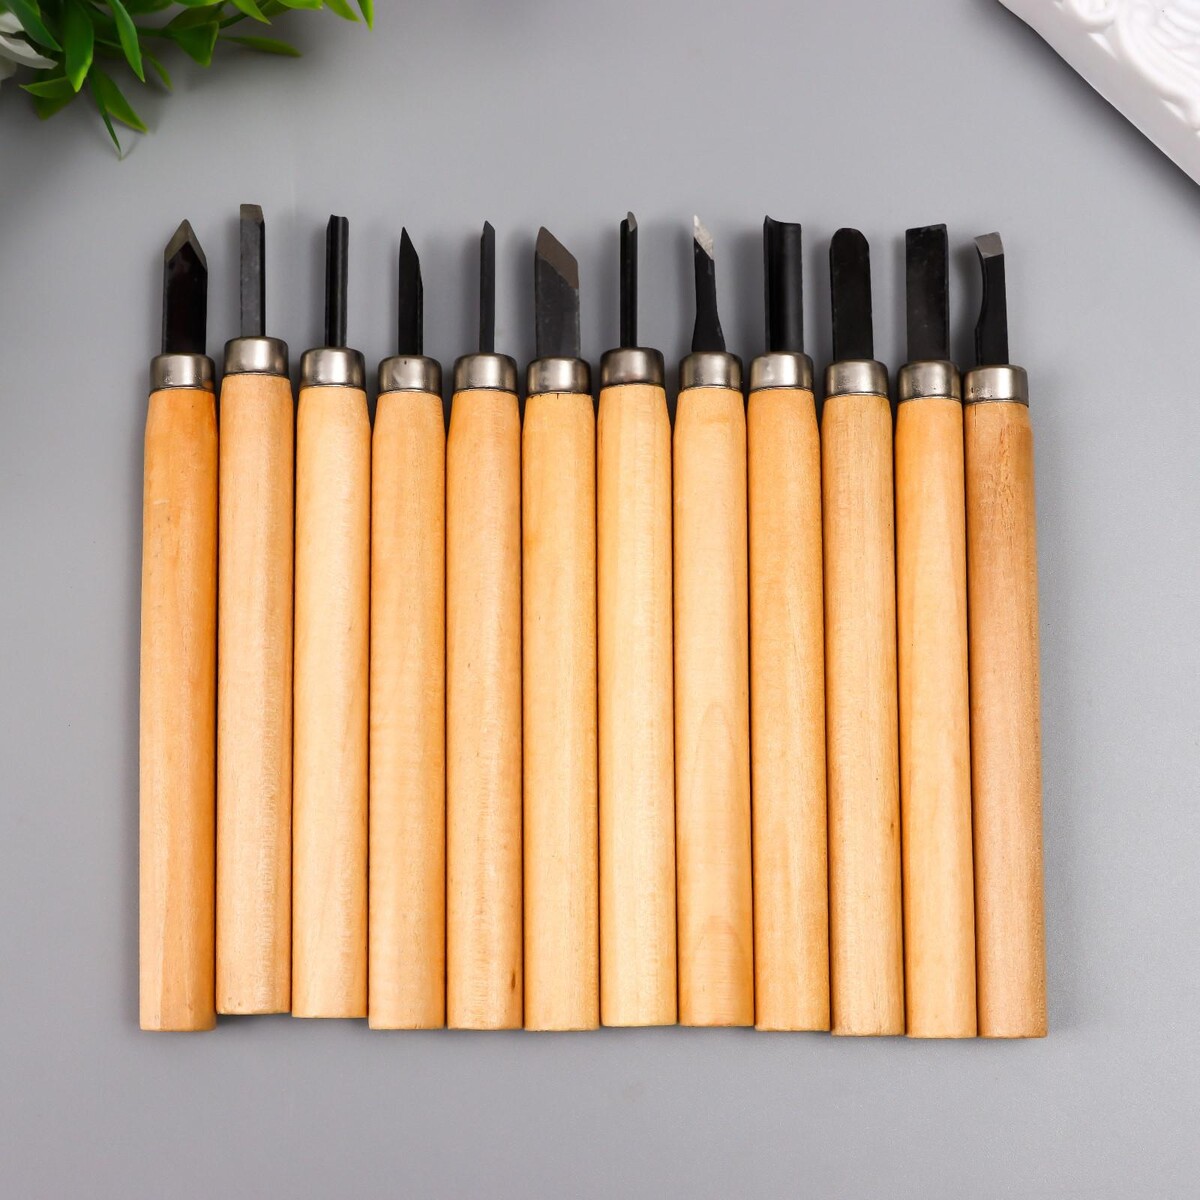 Набор ножей с деревянной ручкой 12 шт 20х17 см набор спонжей на деревянной ручке 4 шт 10 см